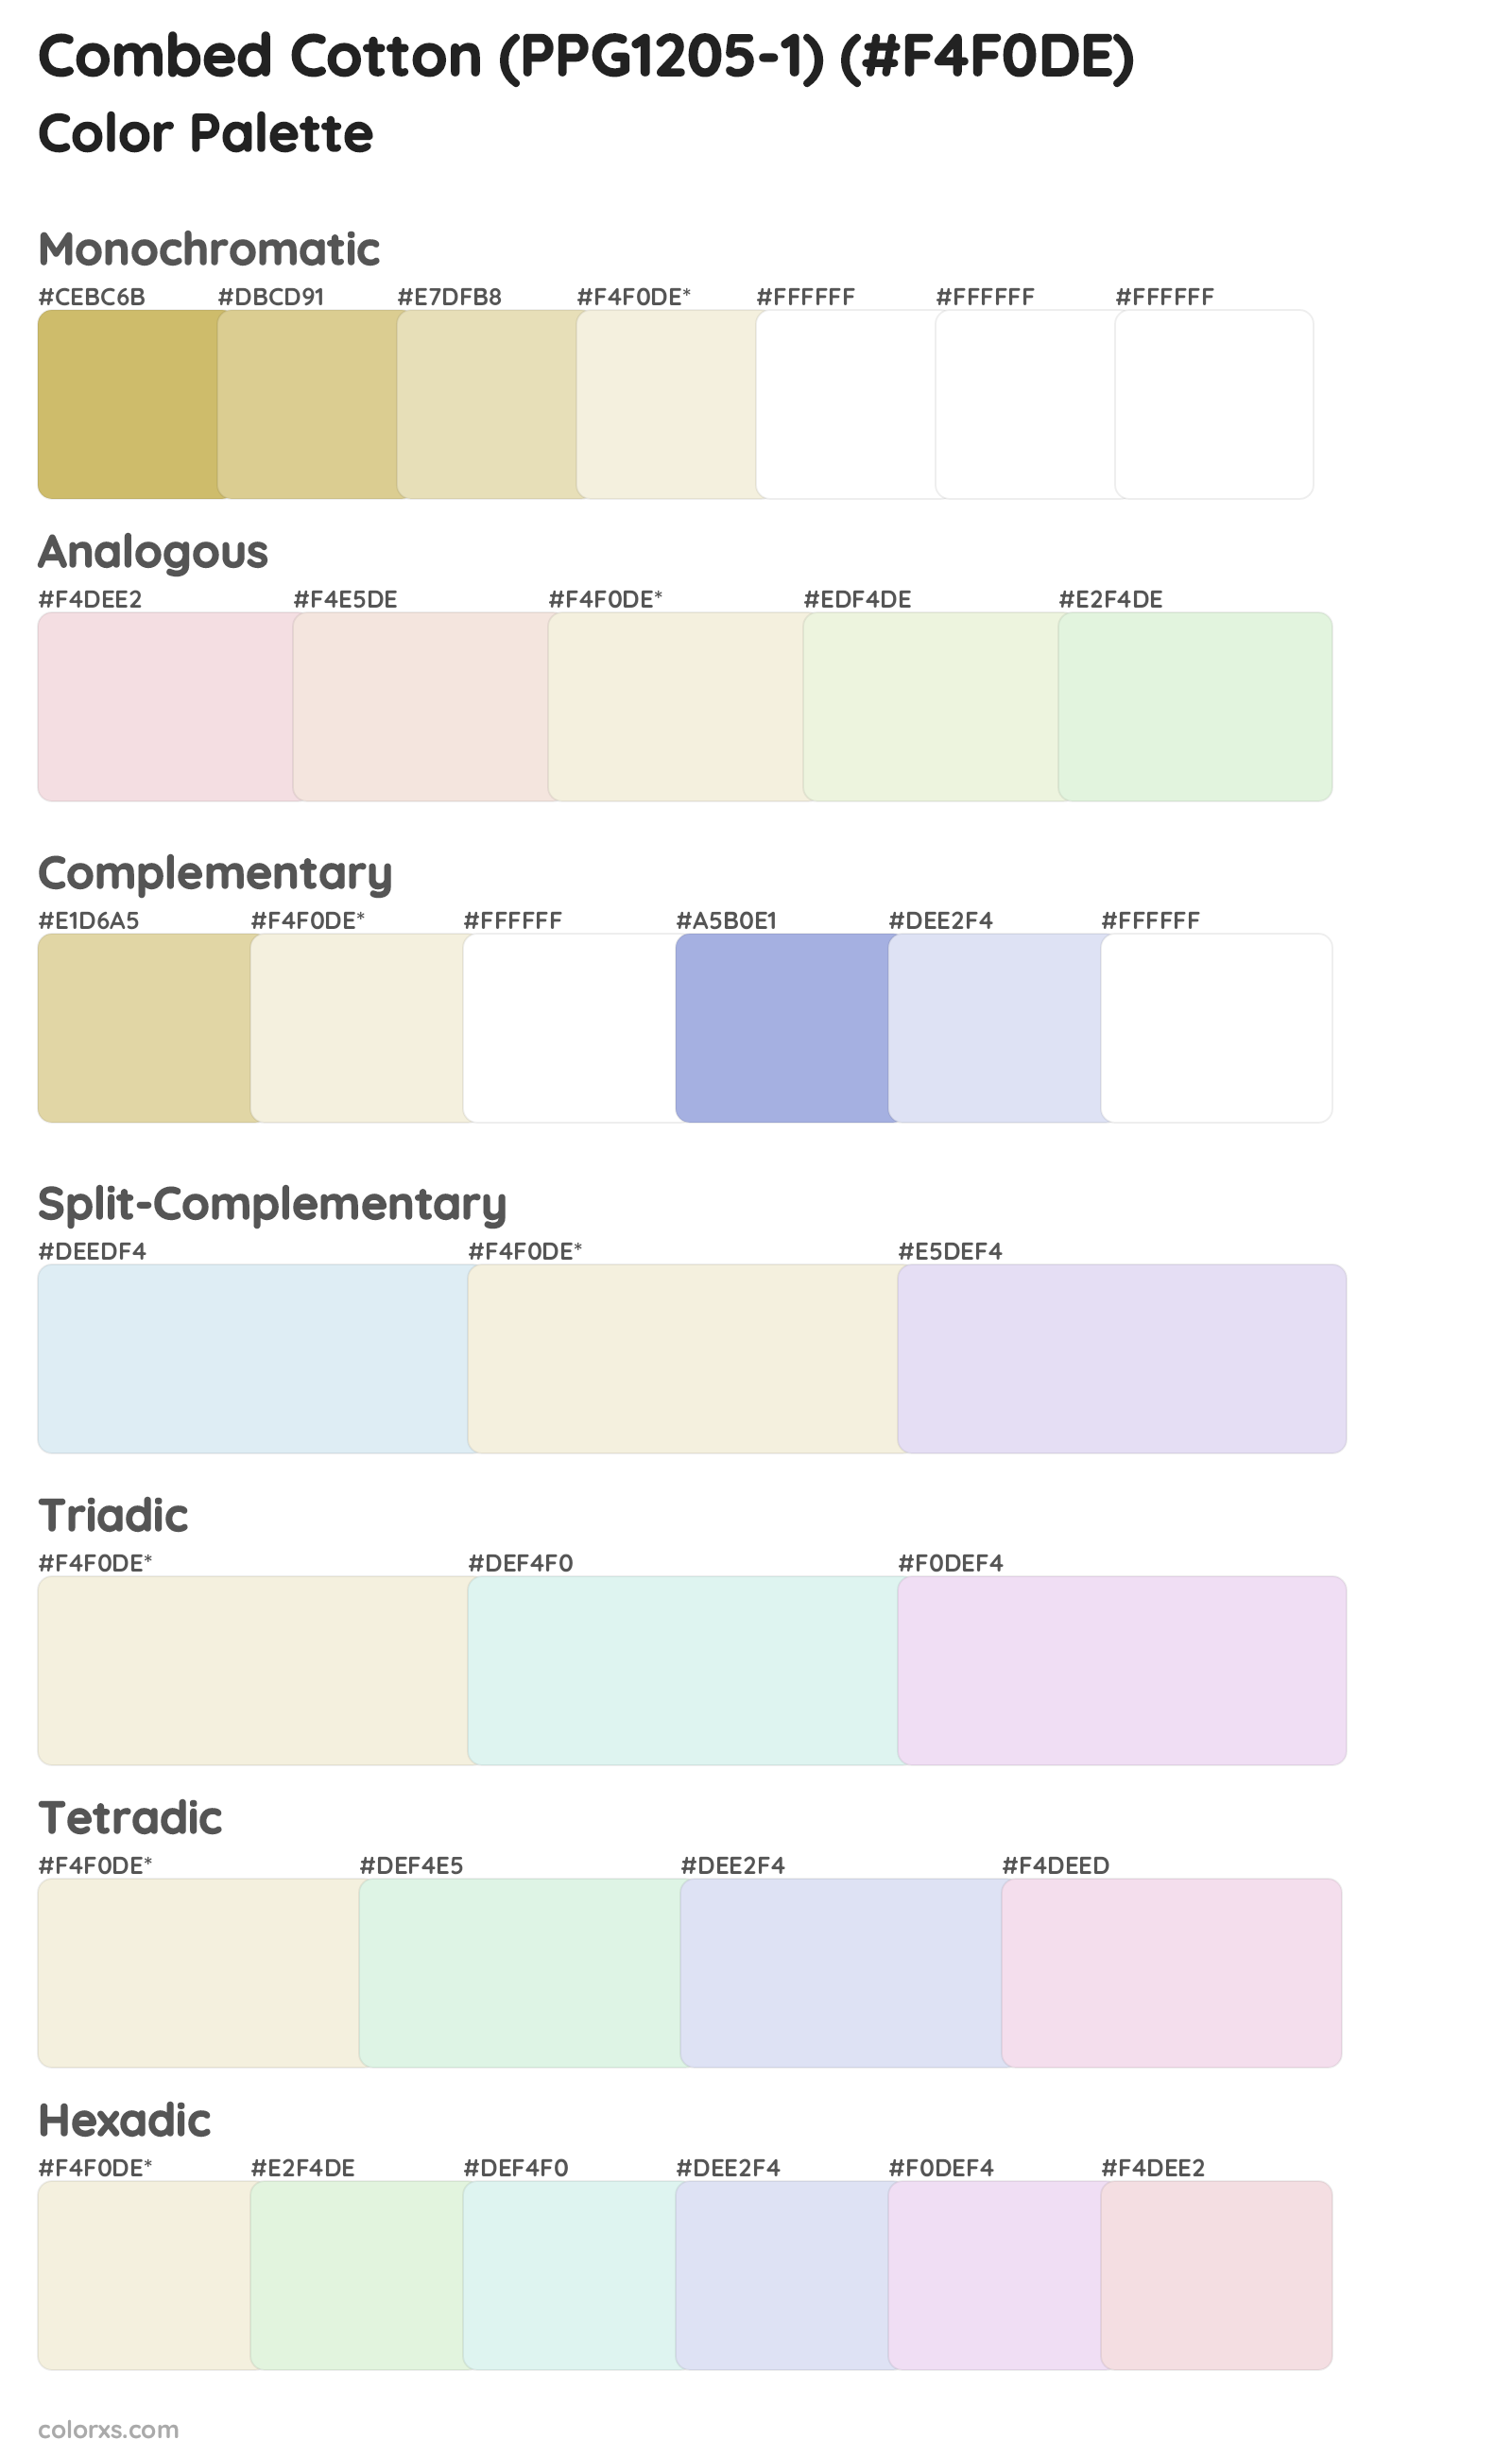 Combed Cotton (PPG1205-1) Color Scheme Palettes